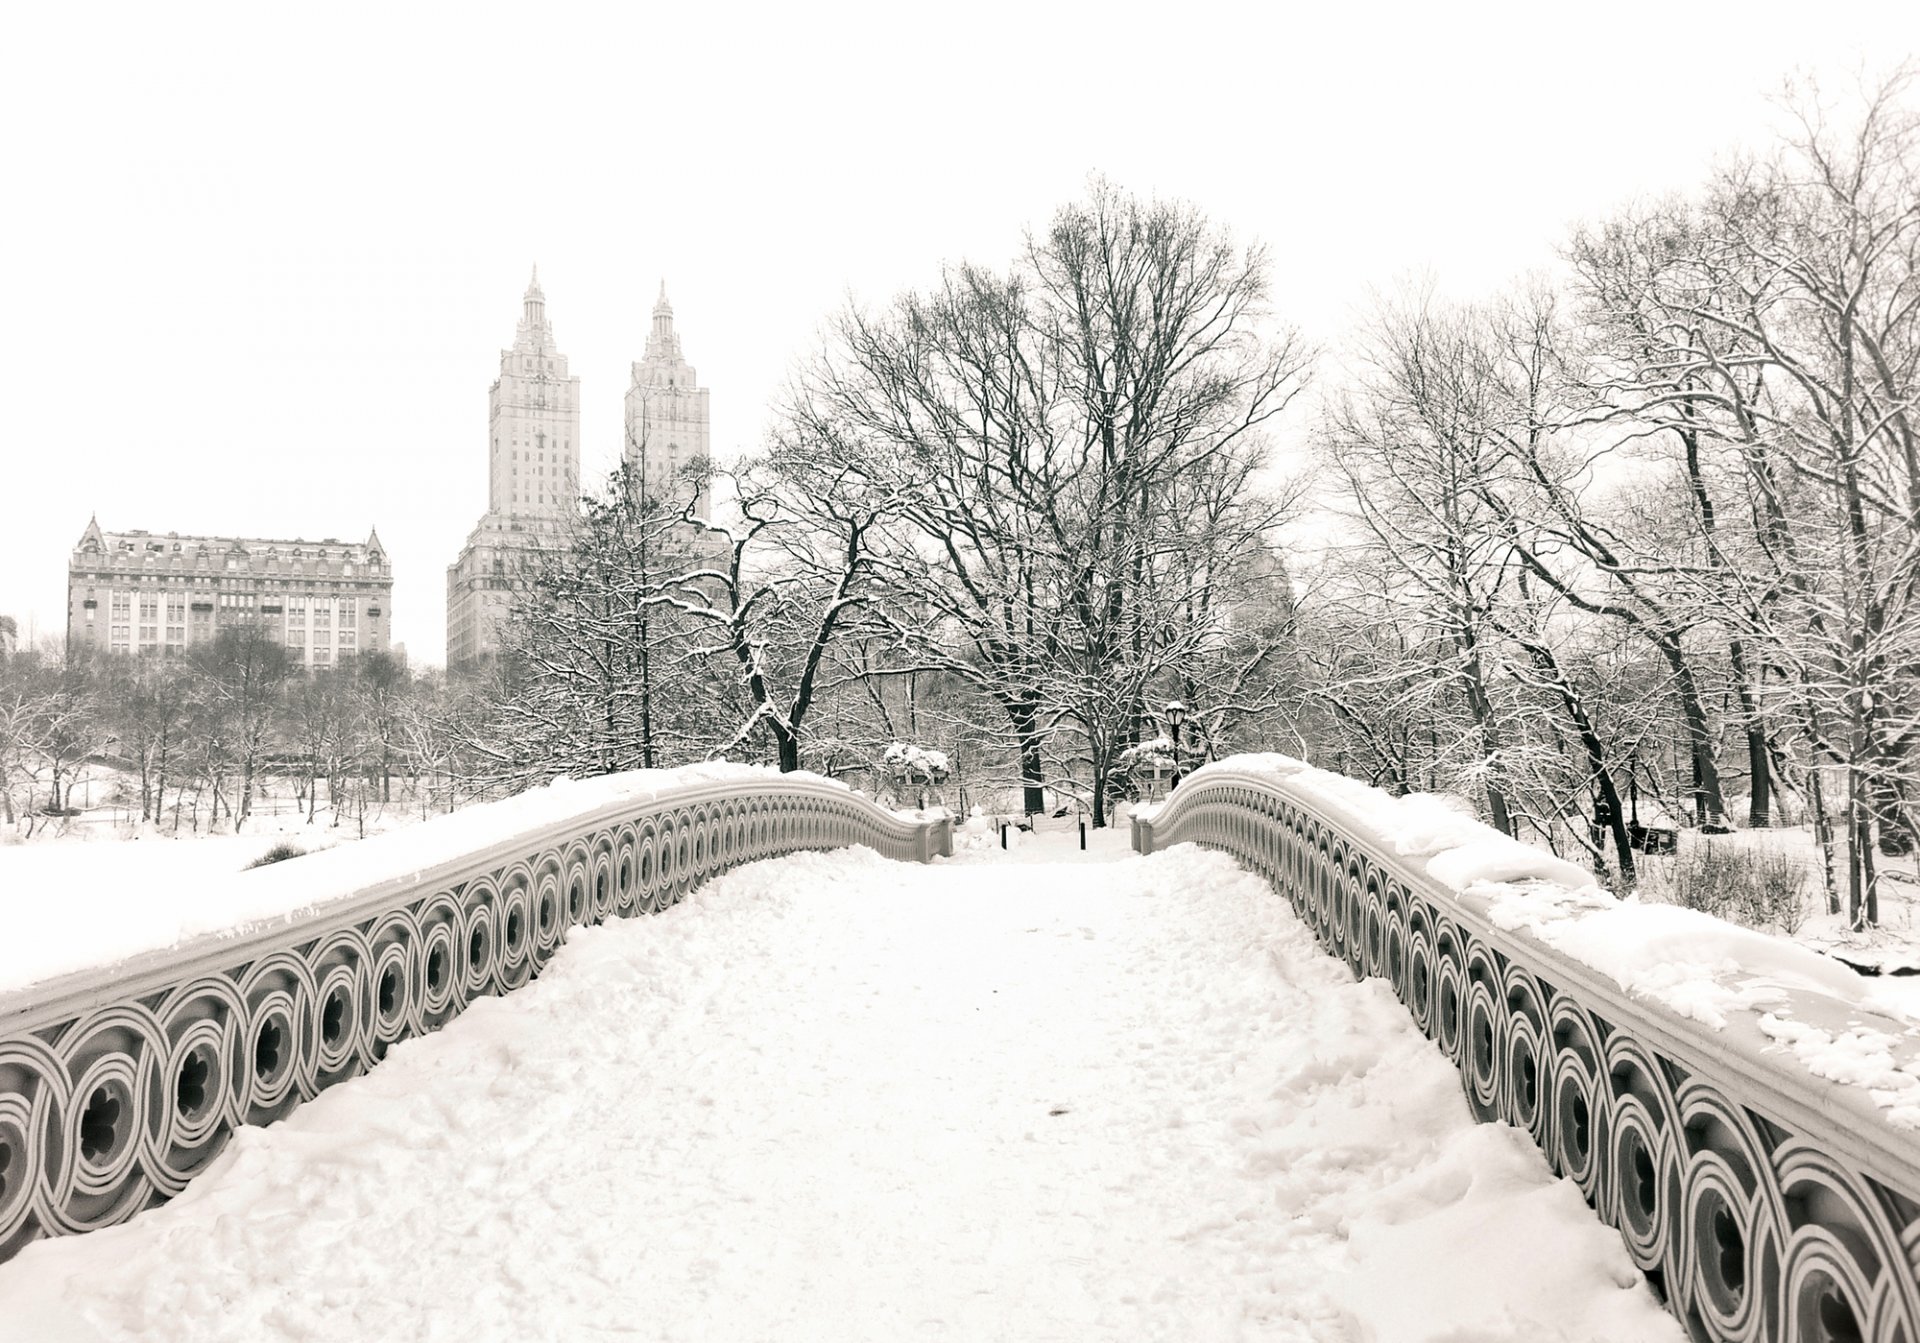 нью-йорк сша манхэттен центральный парк лук мост город зима снег парк деревья здания дома